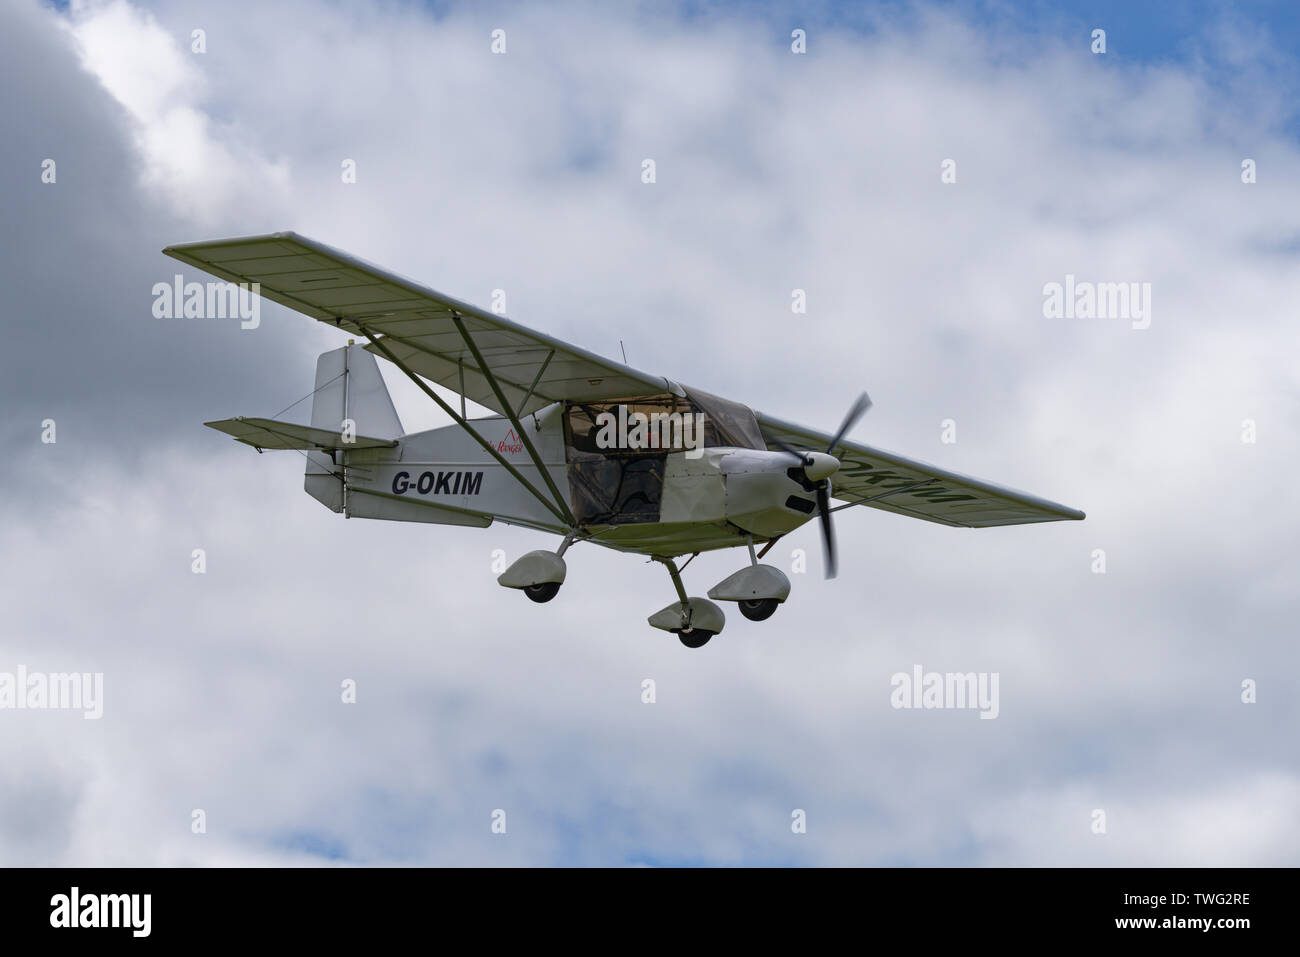 G-OKIM un ultraleggero Skyranger sport aerei in avvicinamento finale per un atterraggio a Popham Airfield vicino a Basingstoke Hampshire Foto Stock